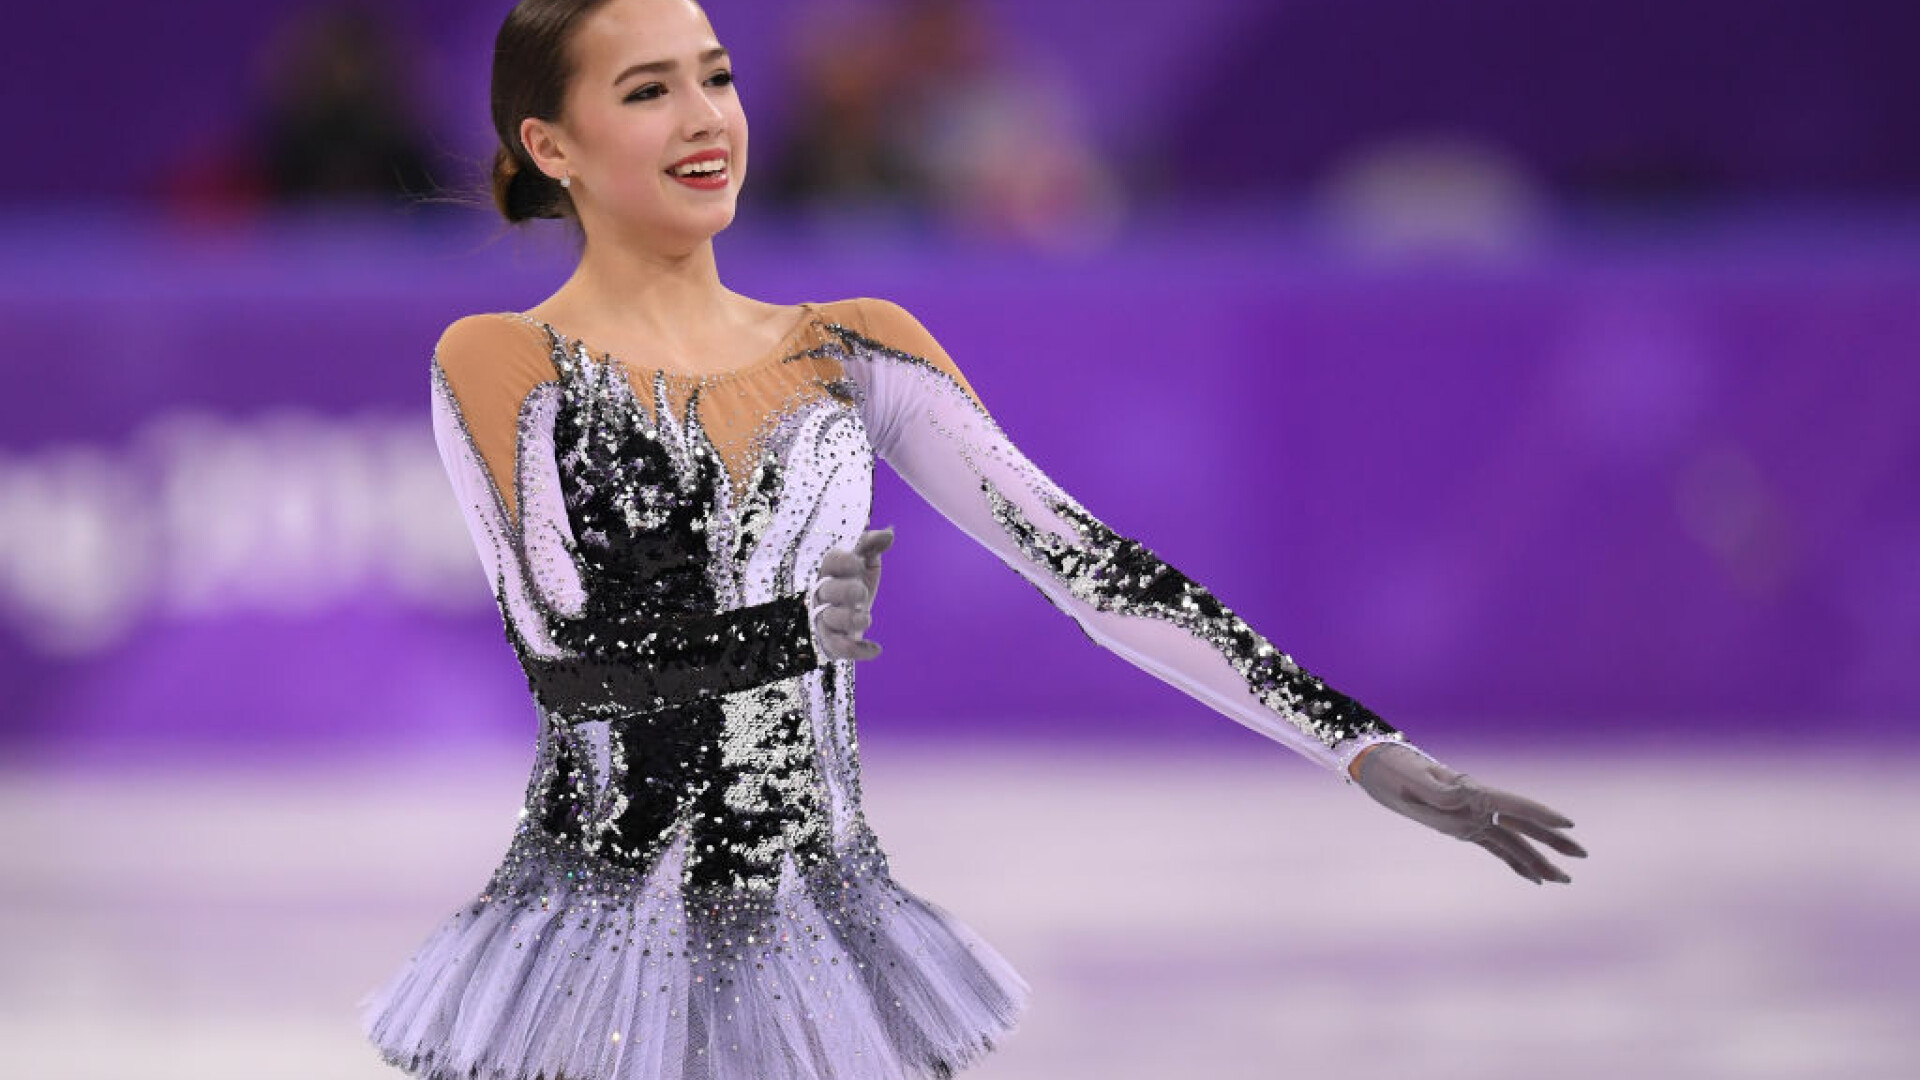 Alina Zaghitova, JO de iarna 2018, patinaj artistic